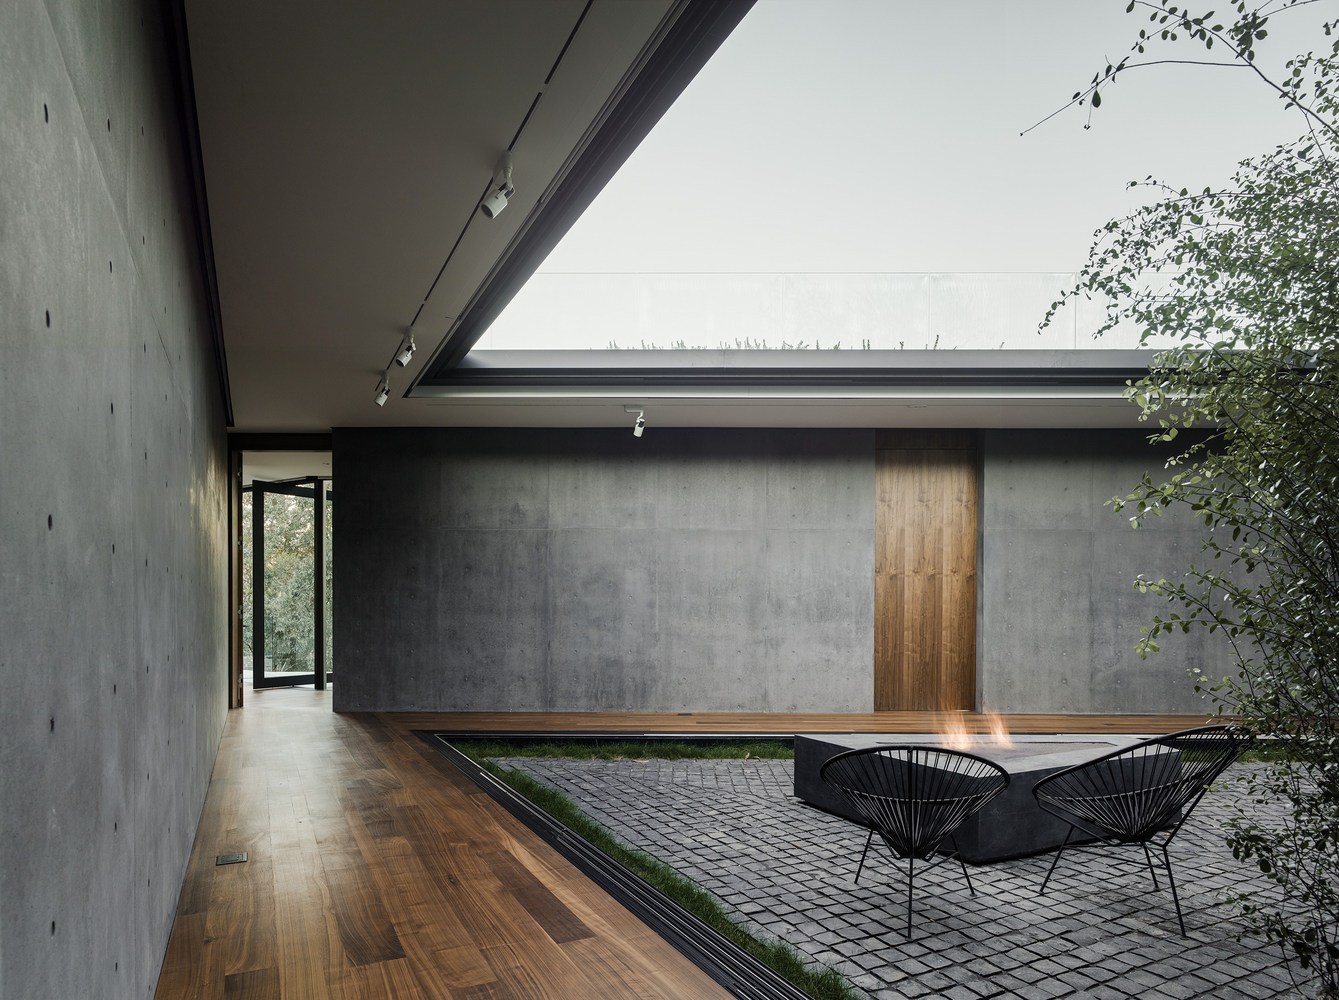 General 1339x1000 house modern architecture interior interior design